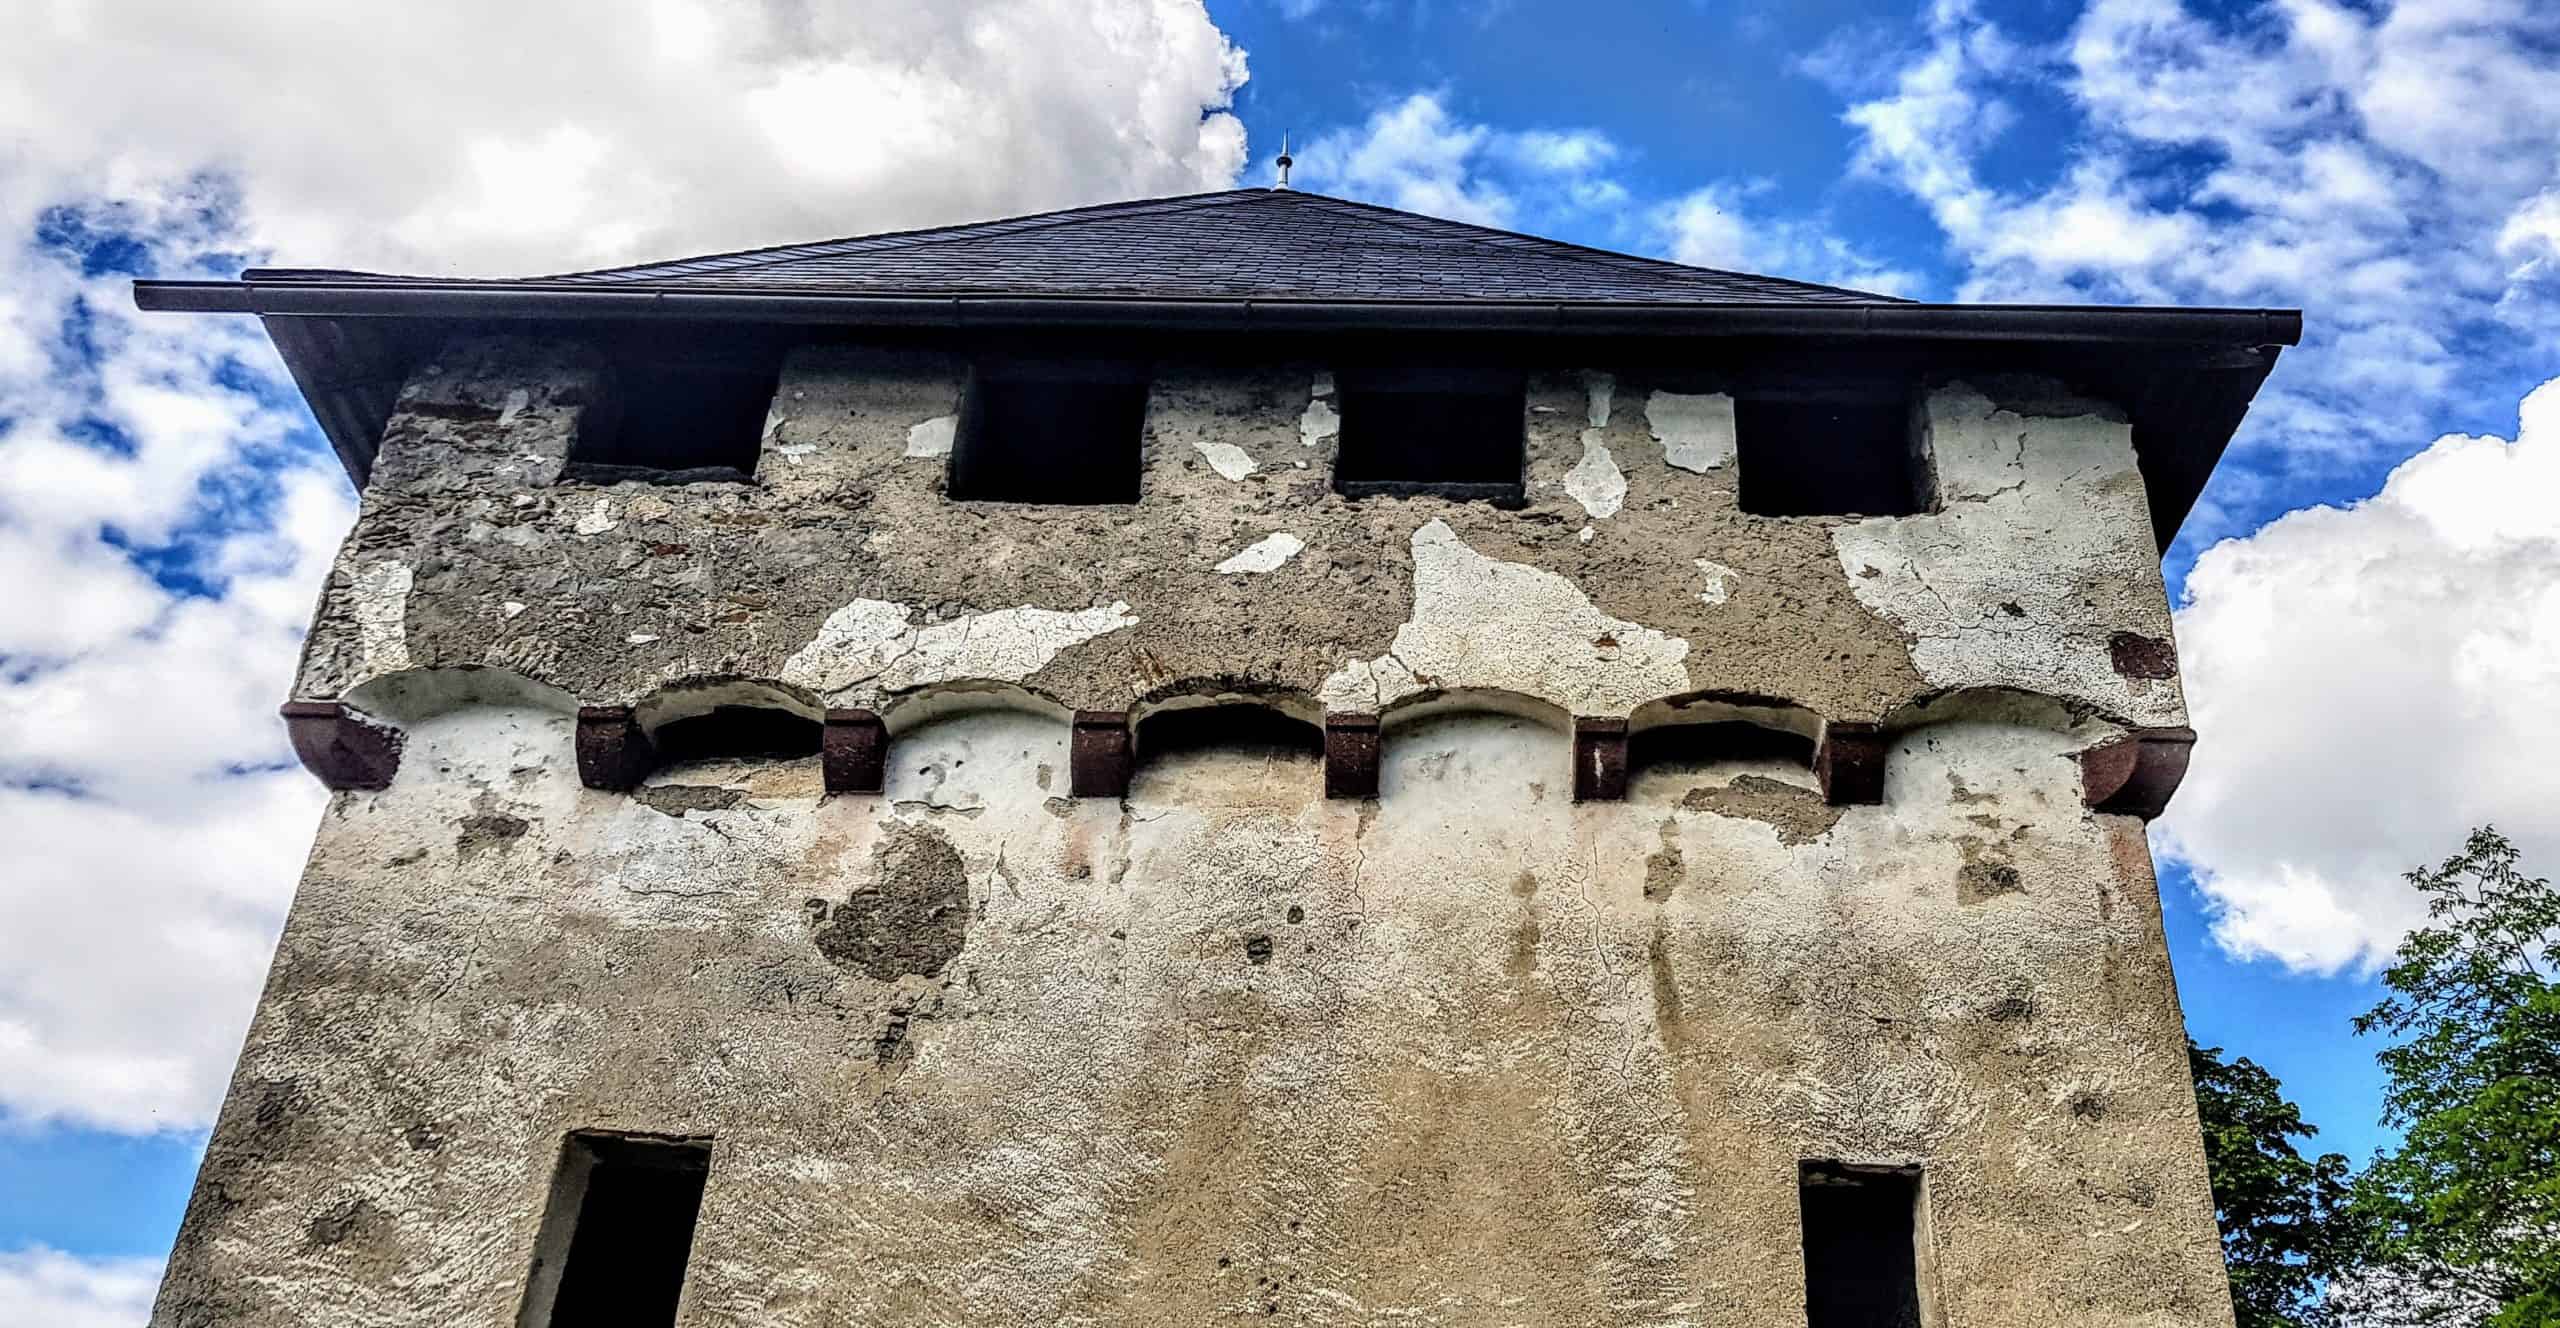 Wanderung auf die Burg Hochosterwitz - alte Mauern des Khevenhüllertors. Prächtigstes Tor des Ausflugsziels in Kärnten